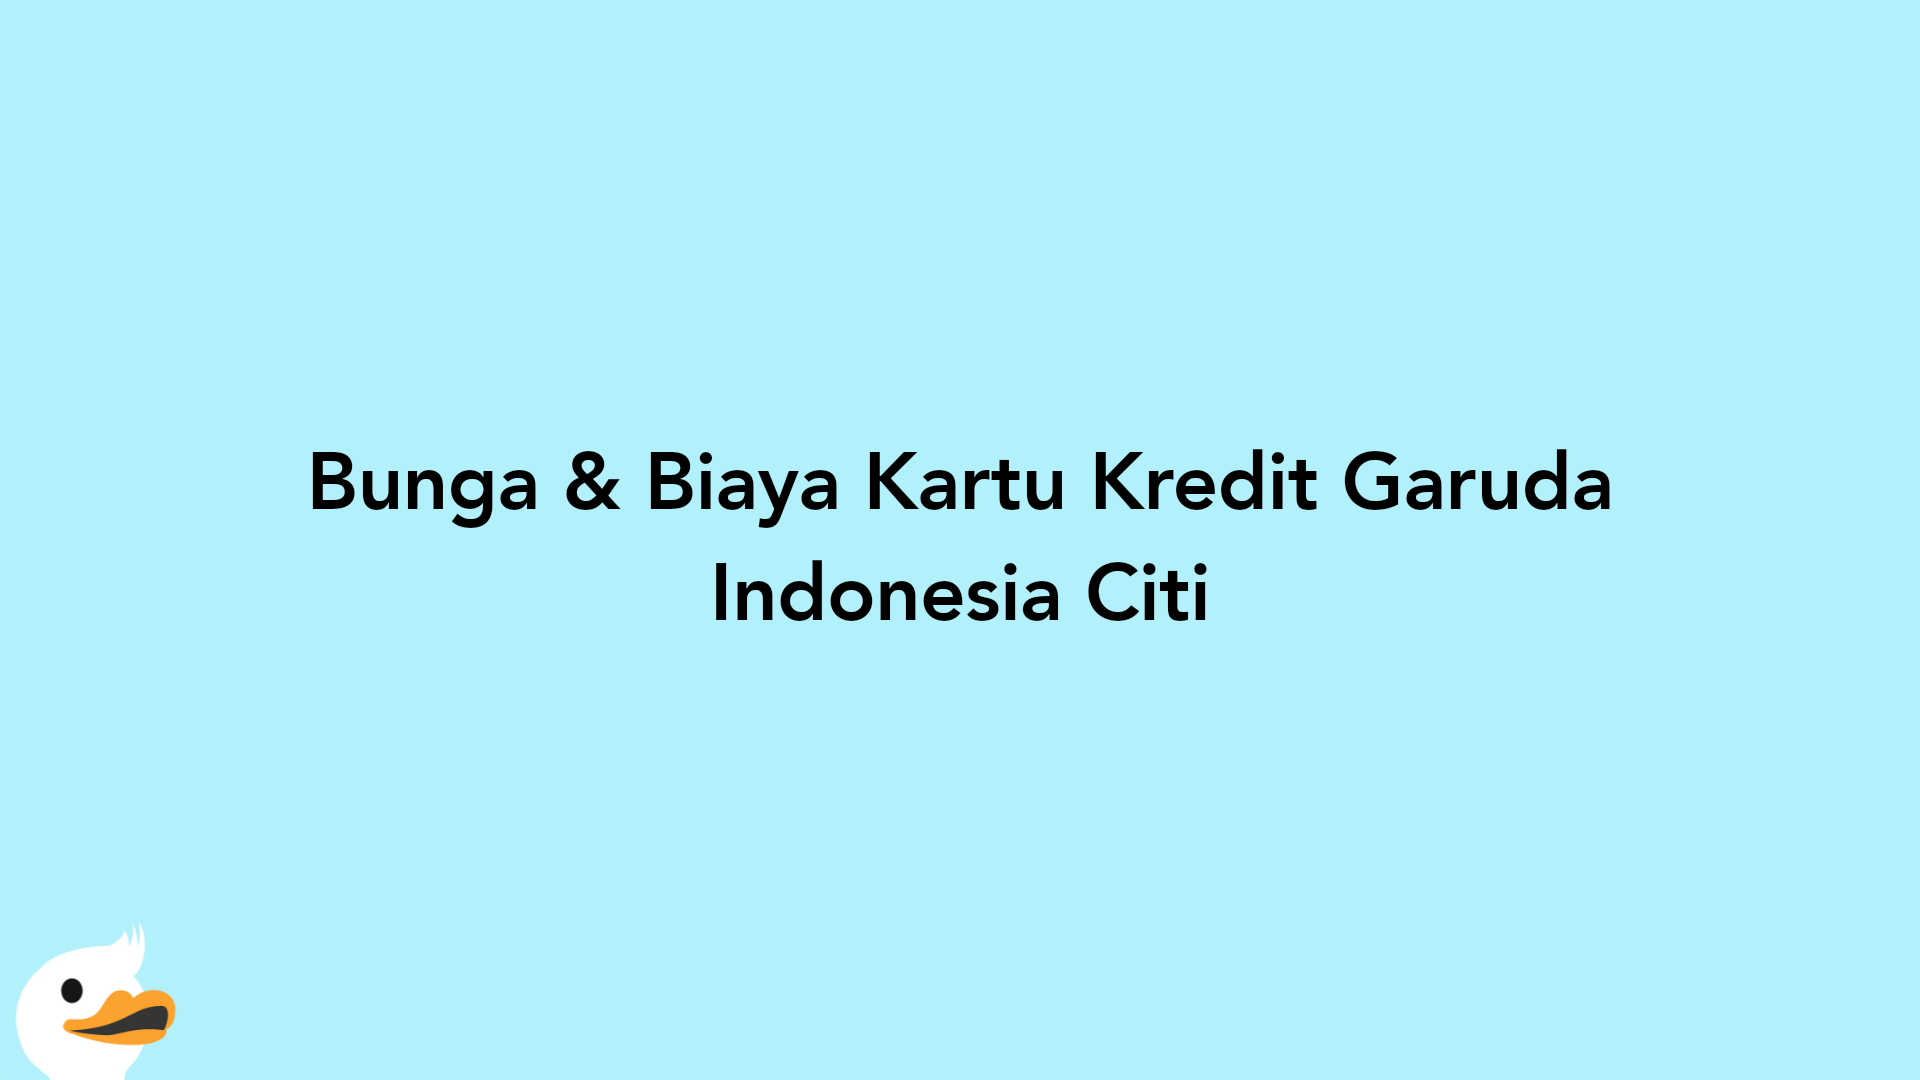 Bunga & Biaya Kartu Kredit Garuda Indonesia Citi